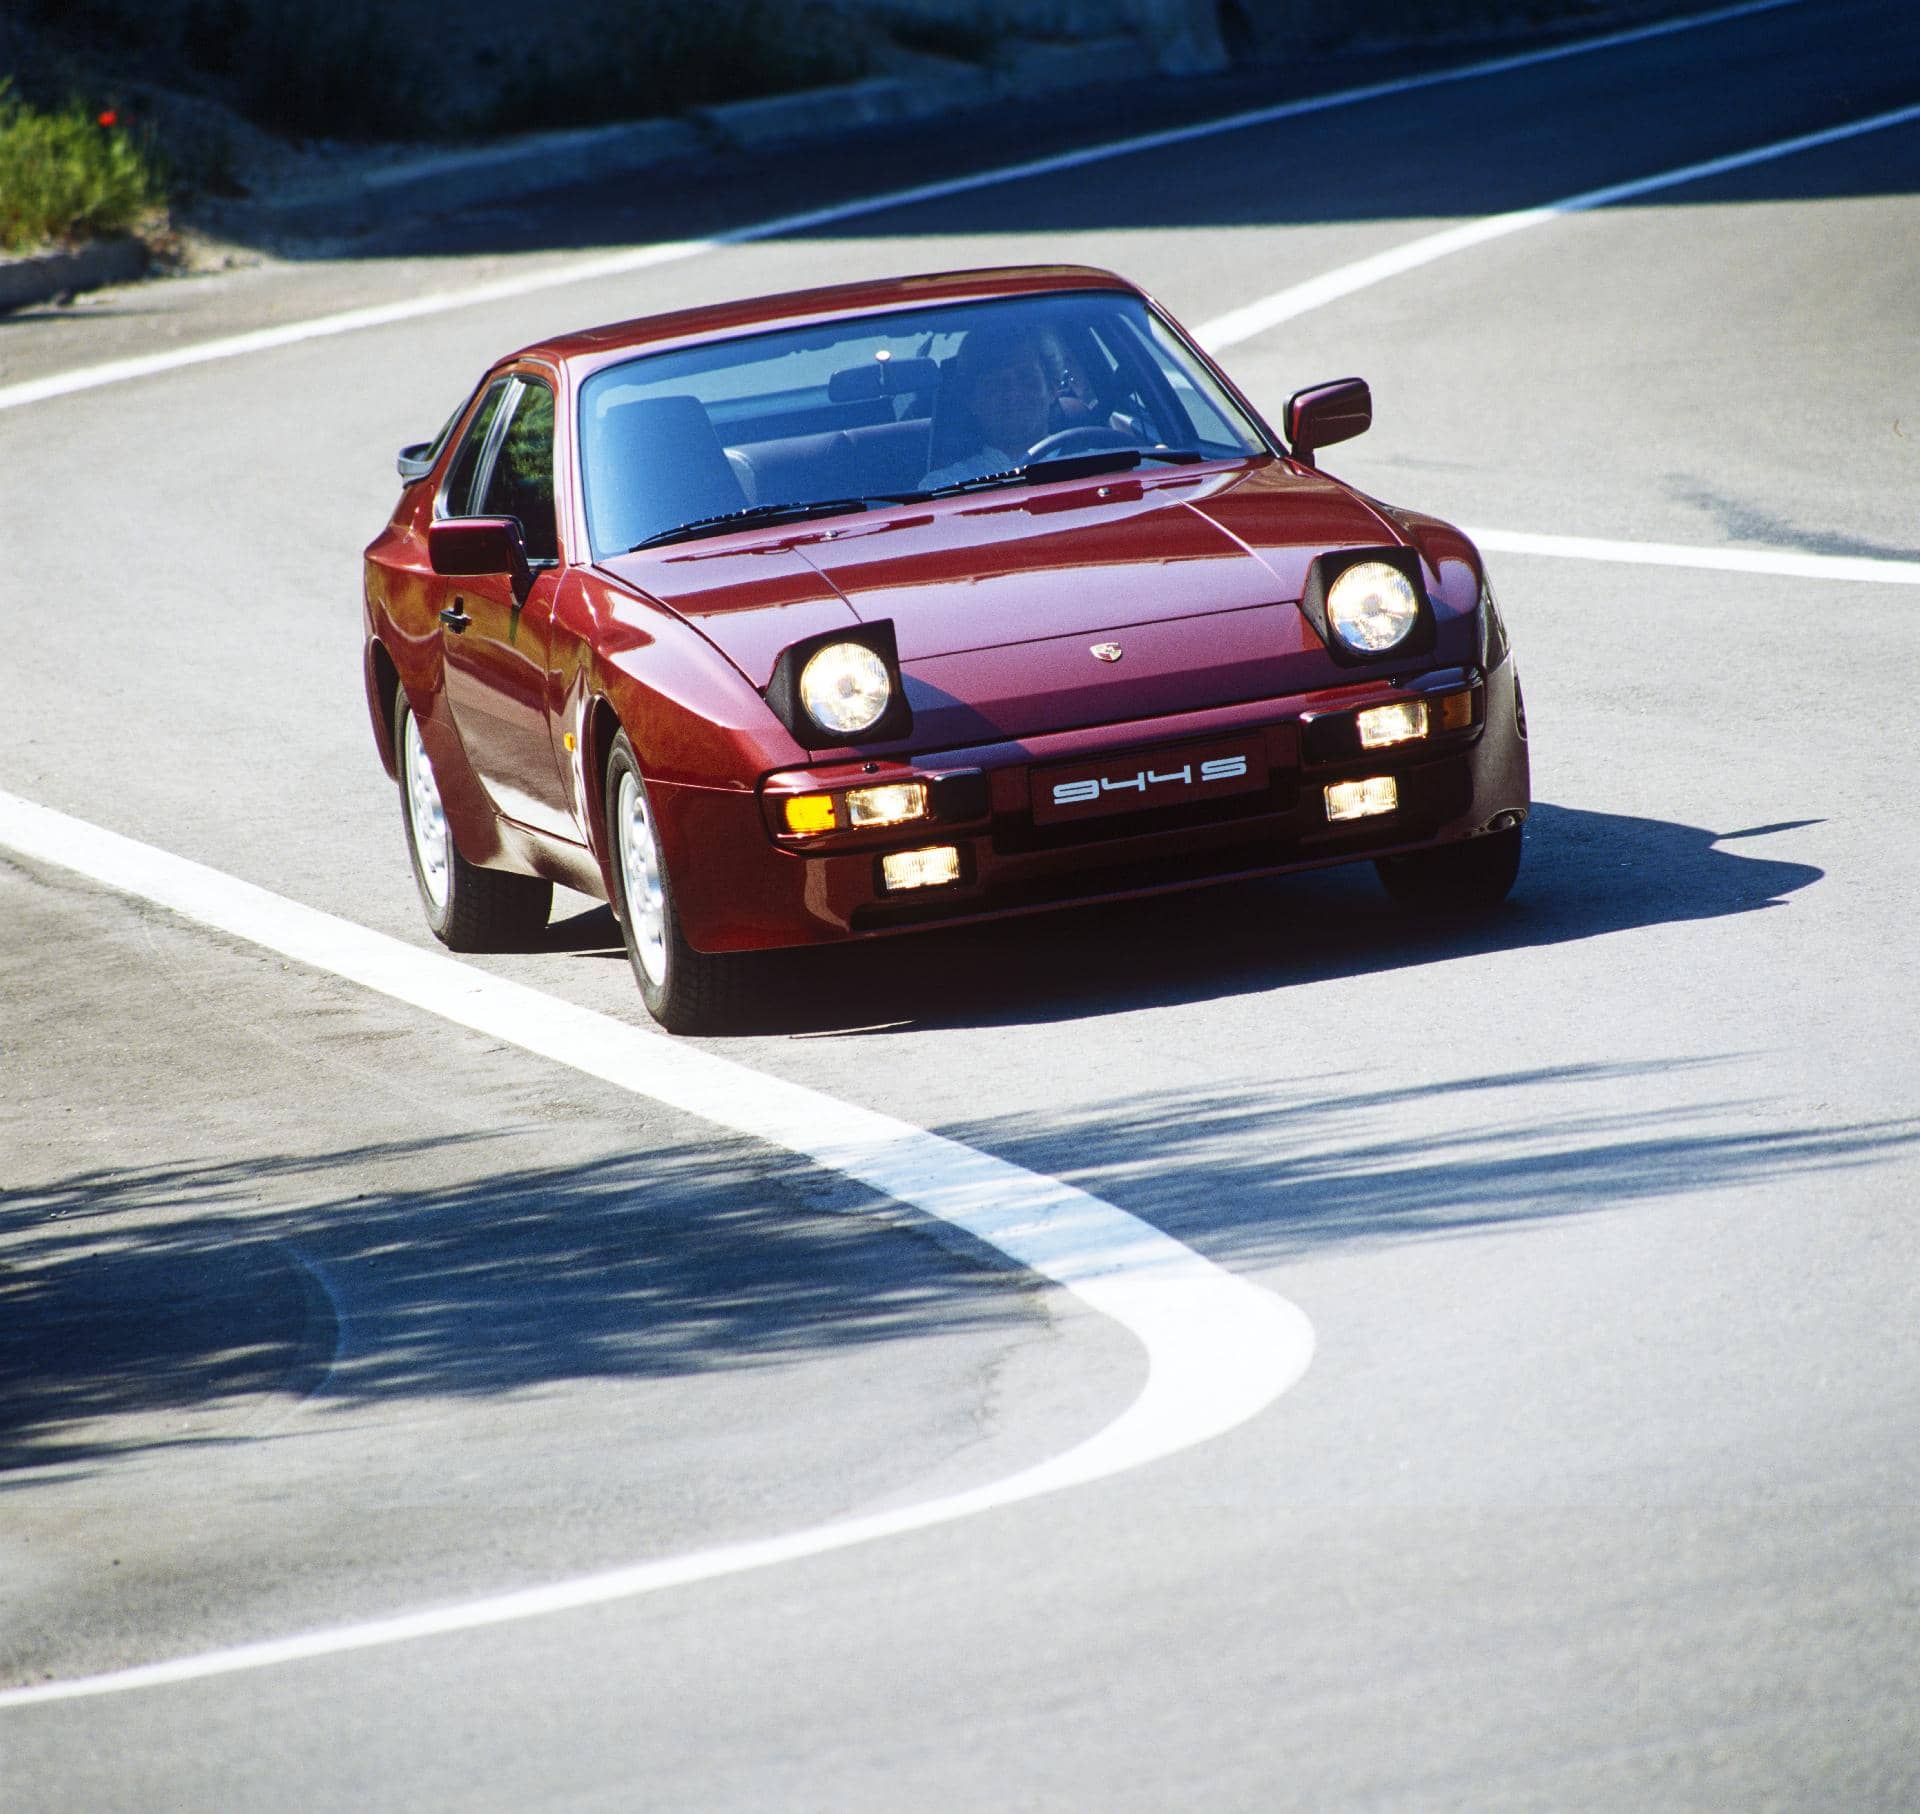 Vista dinámica del Porsche 944 S enfatizando su diseño deportivo.